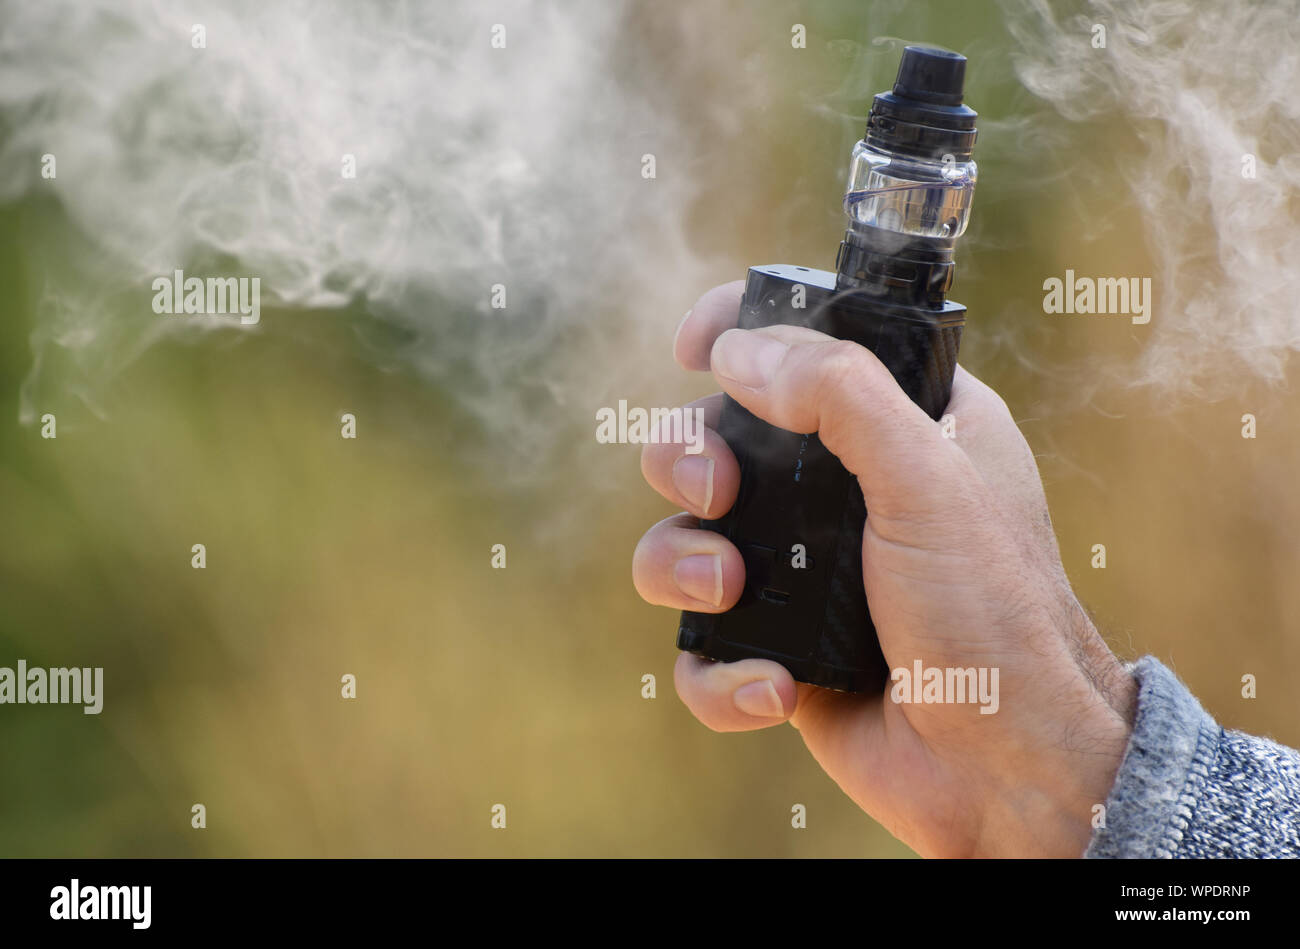 Un vaping mod essendo tenuto in una mano d'uomo con nebbia vaping che lo circonda Foto Stock